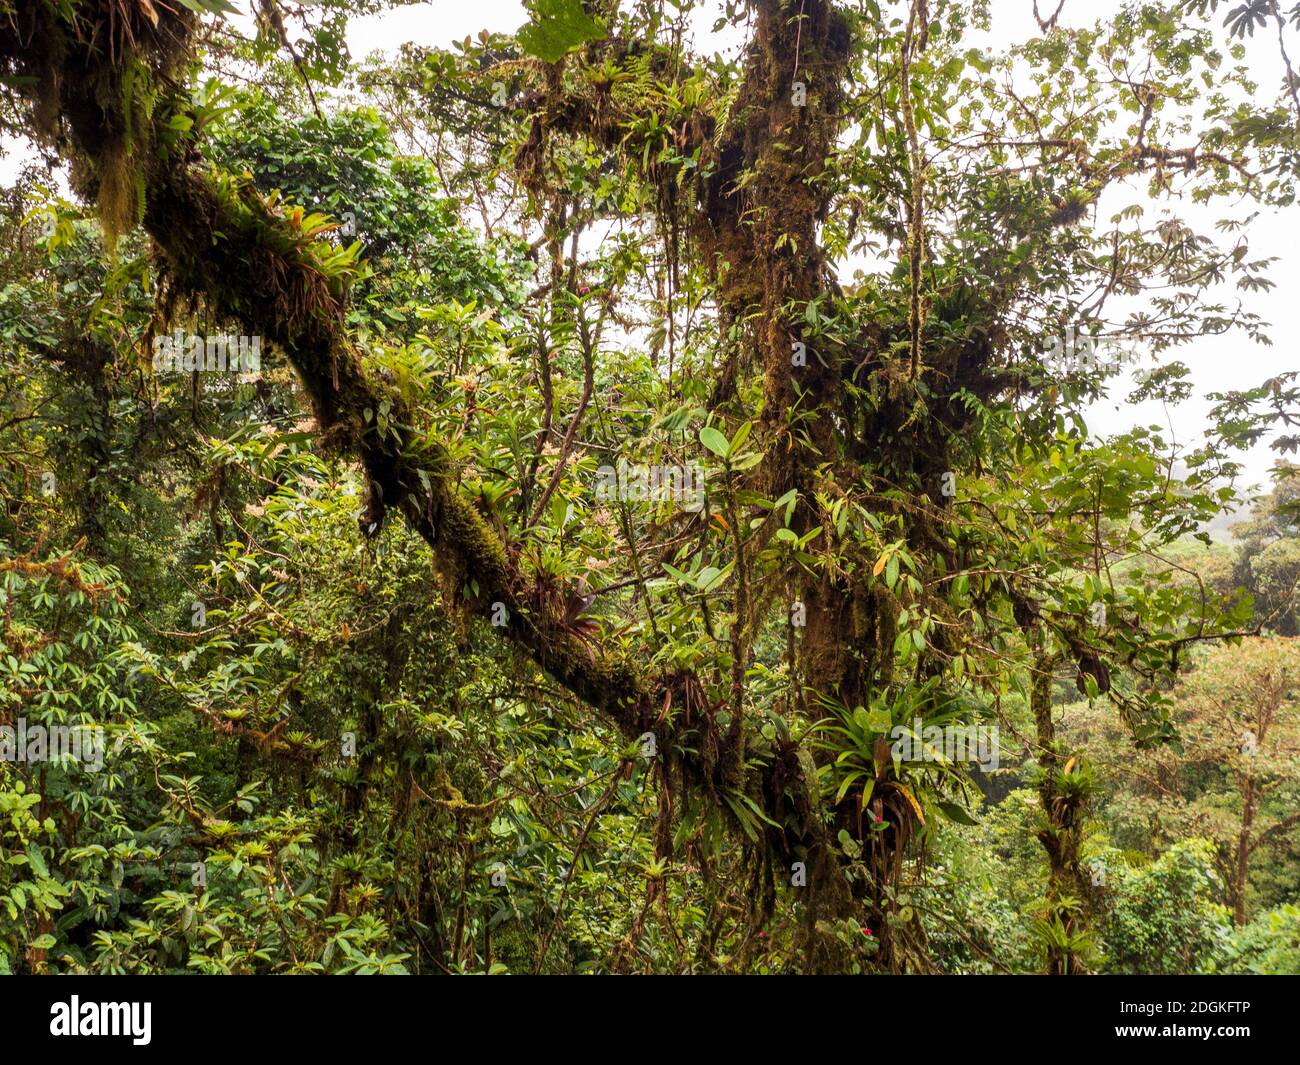 Escursione attraverso la foresta pluviale della Costa Rica. Sugli alberi crescono bromeliadi, felci, selaginella e altri epifiti. Tanti toni verdi diversi. Foto Stock